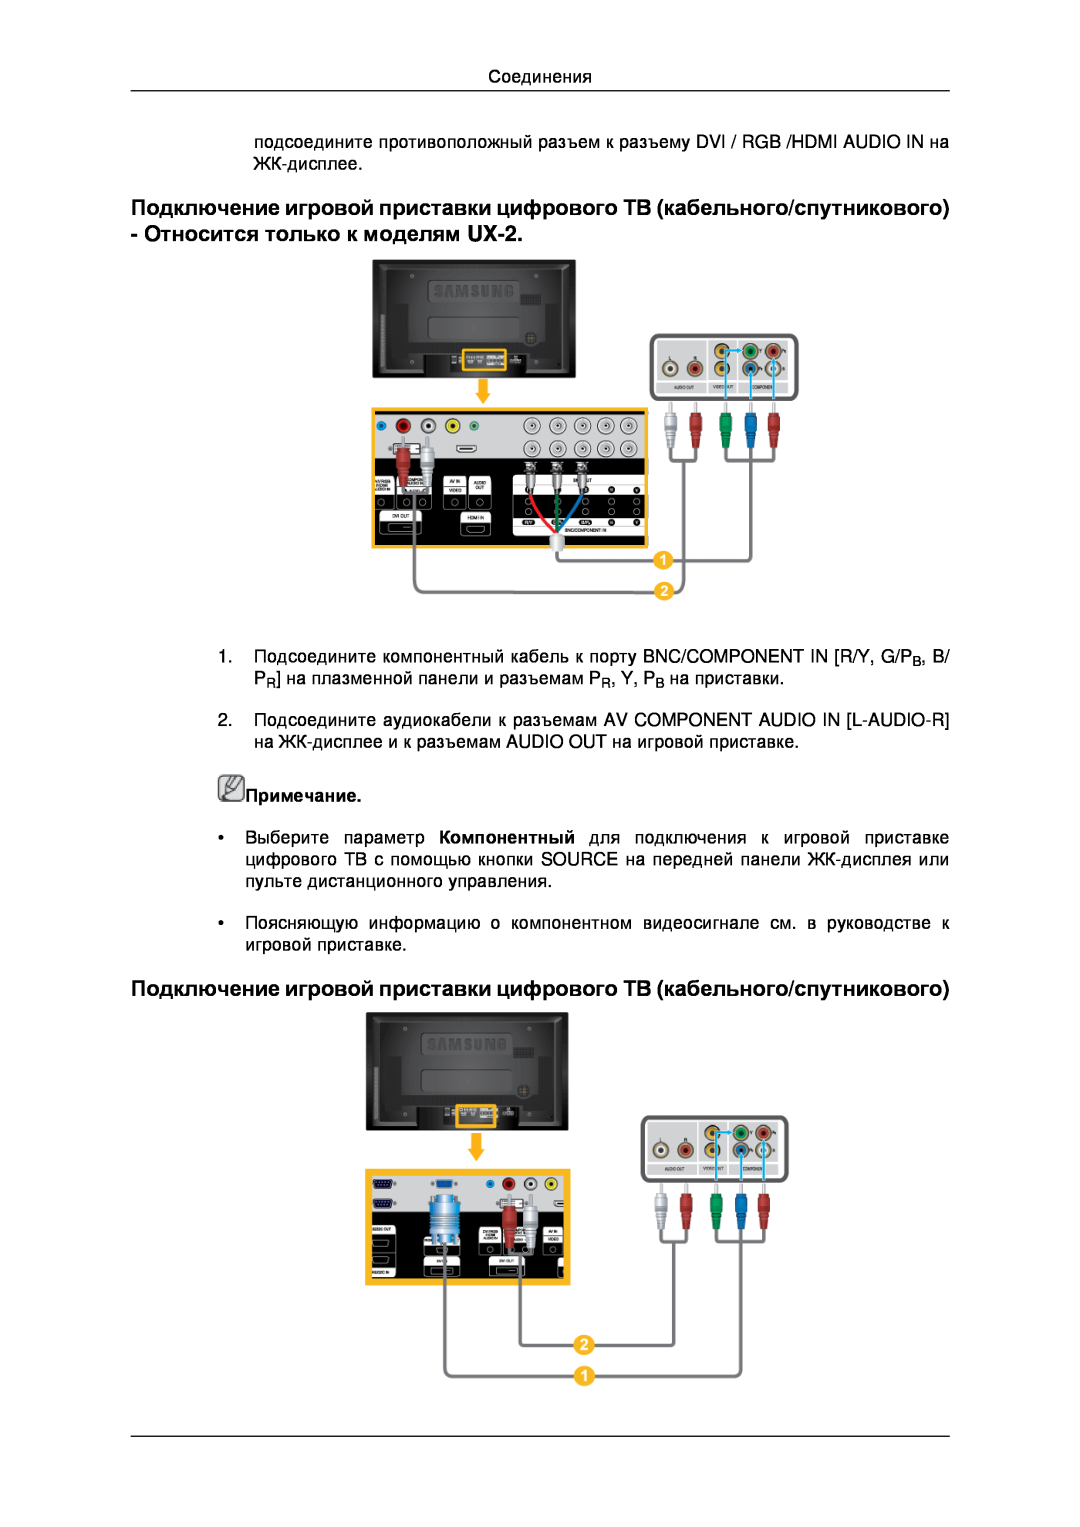 Samsung LH46MRTLBC/EN Подключение игровой приставки цифрового ТВ кабельного/спутникового, Относится только к моделям UX-2 